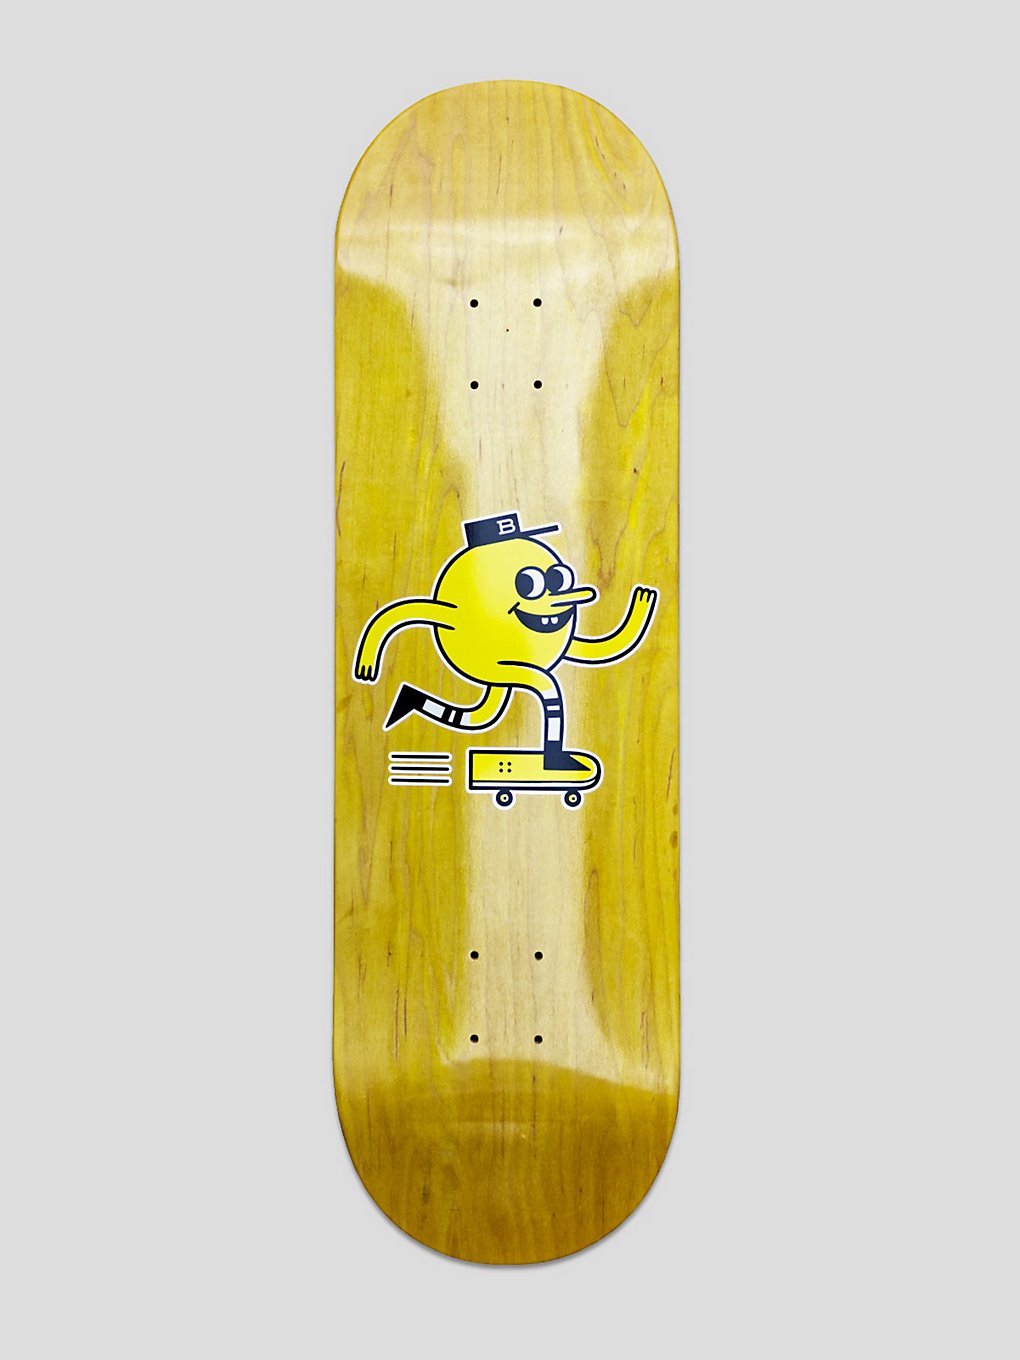 Blast Skates OG Yellow stain 8.375" Skateboard deck patroon